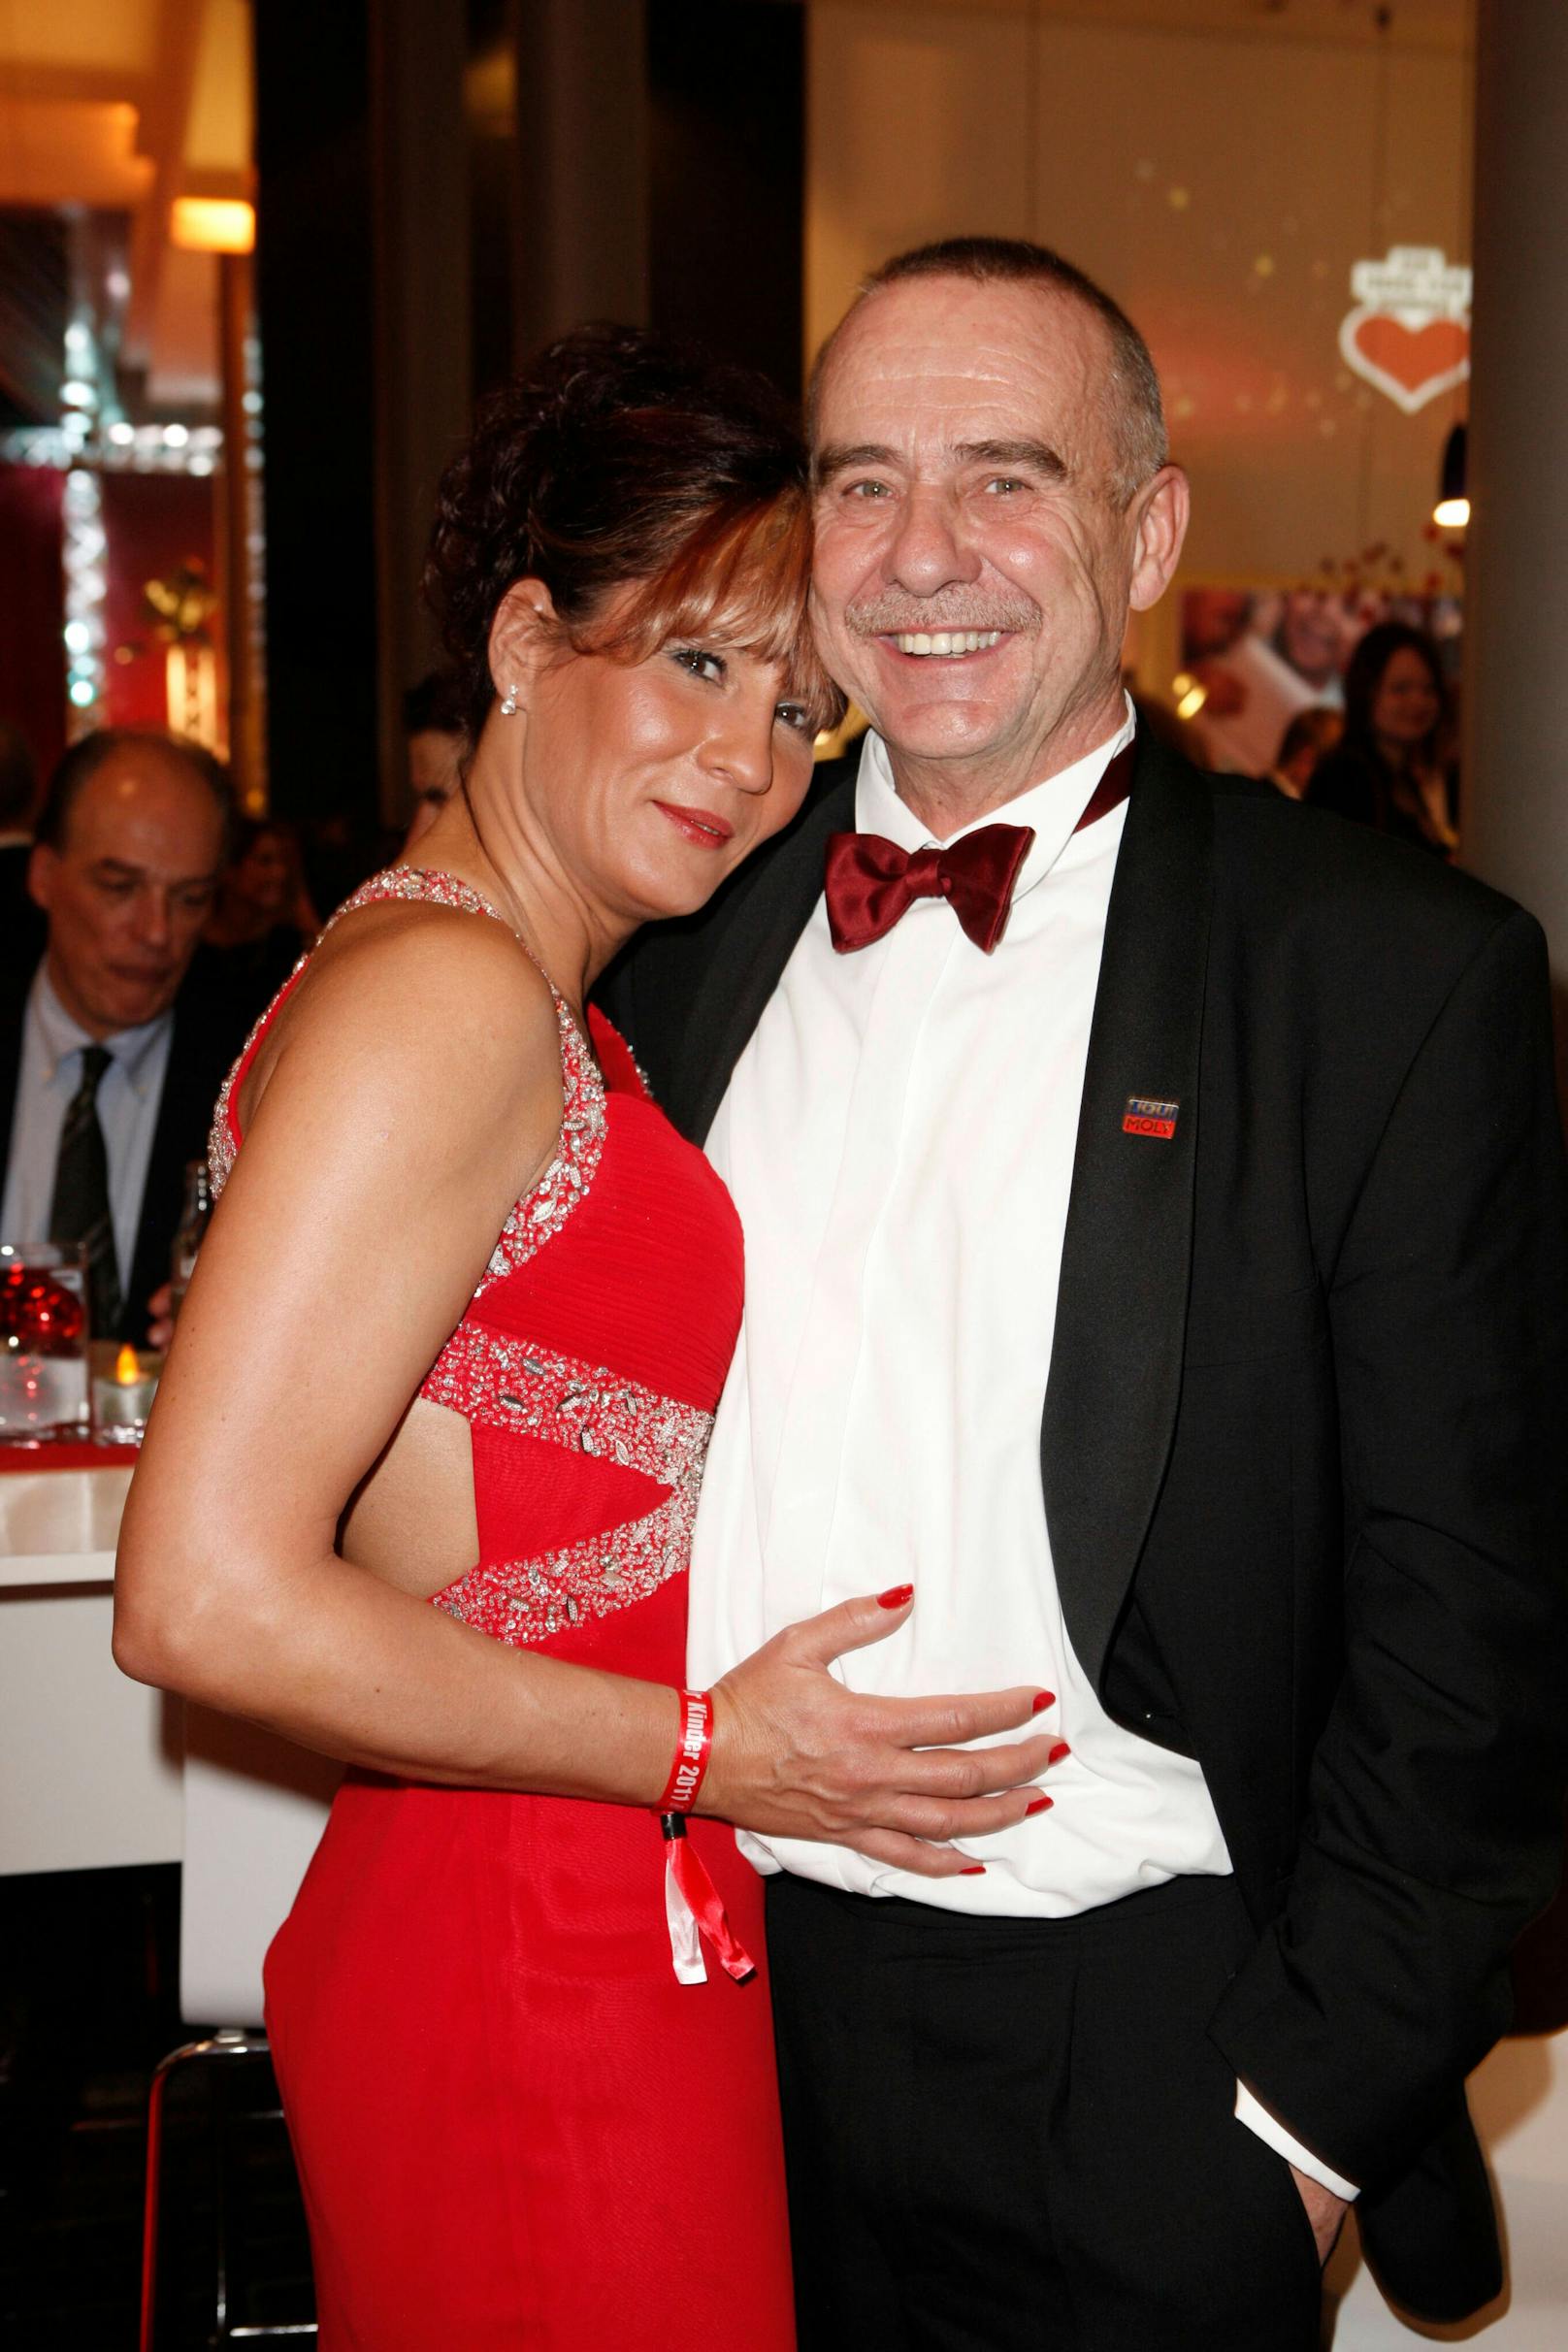 Als "Liqui Moly"-Chef war er mit seiner damaligen Freundin Kerstin Thiele gerngesehener Gast bei Spendengalas, wie hier bei der "Ein Herz für Kinder"-Gala im Dezember 2011